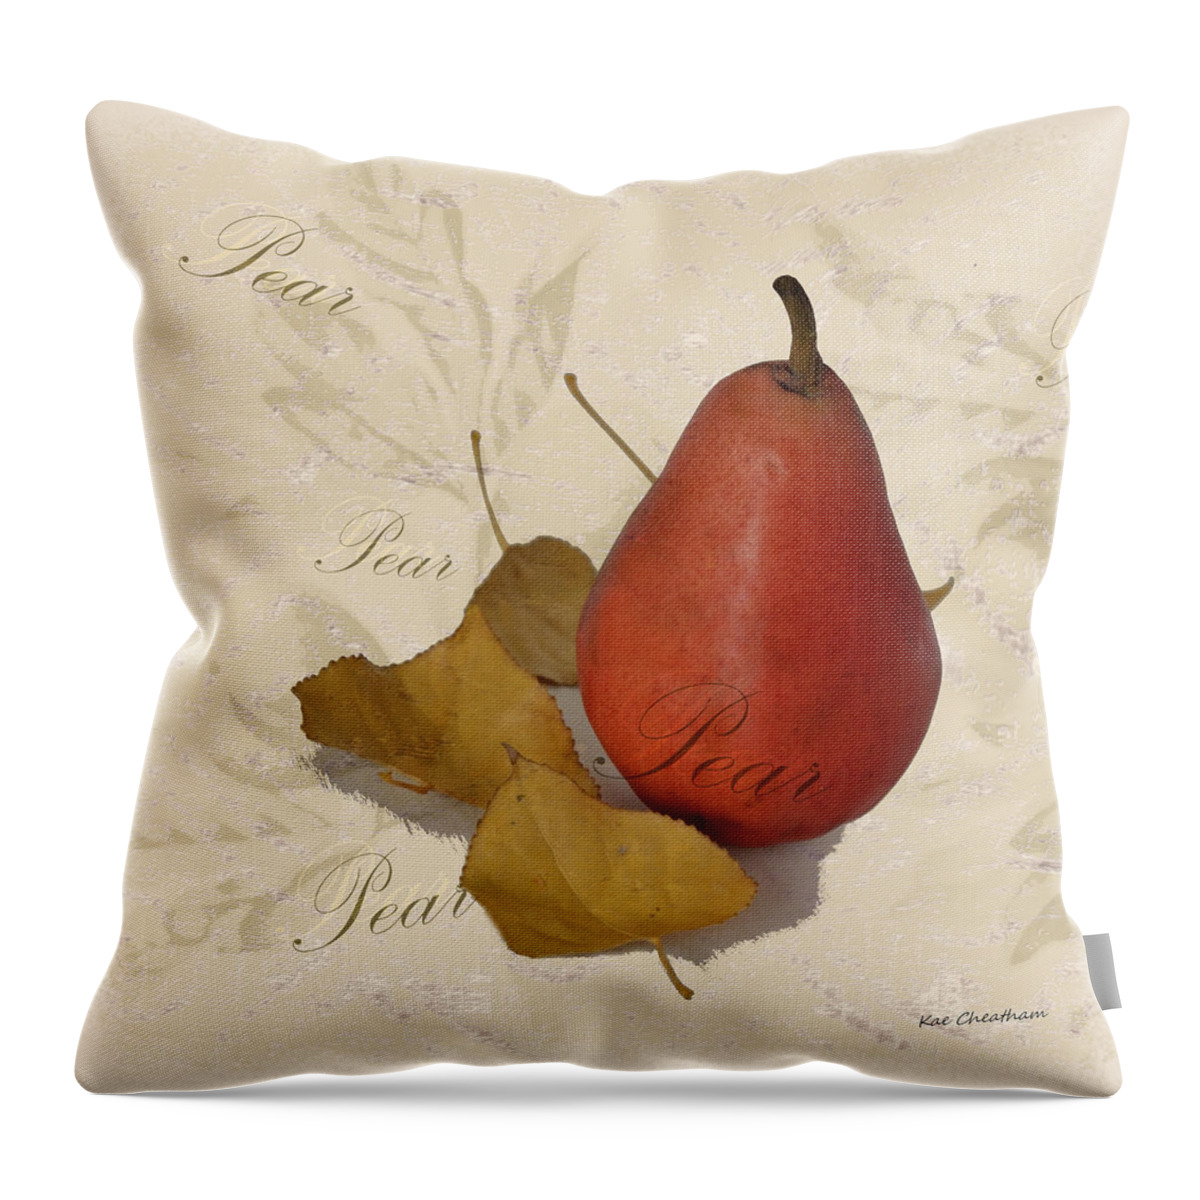 Pear Throw Pillow featuring the digital art Pear Square by Kae Cheatham